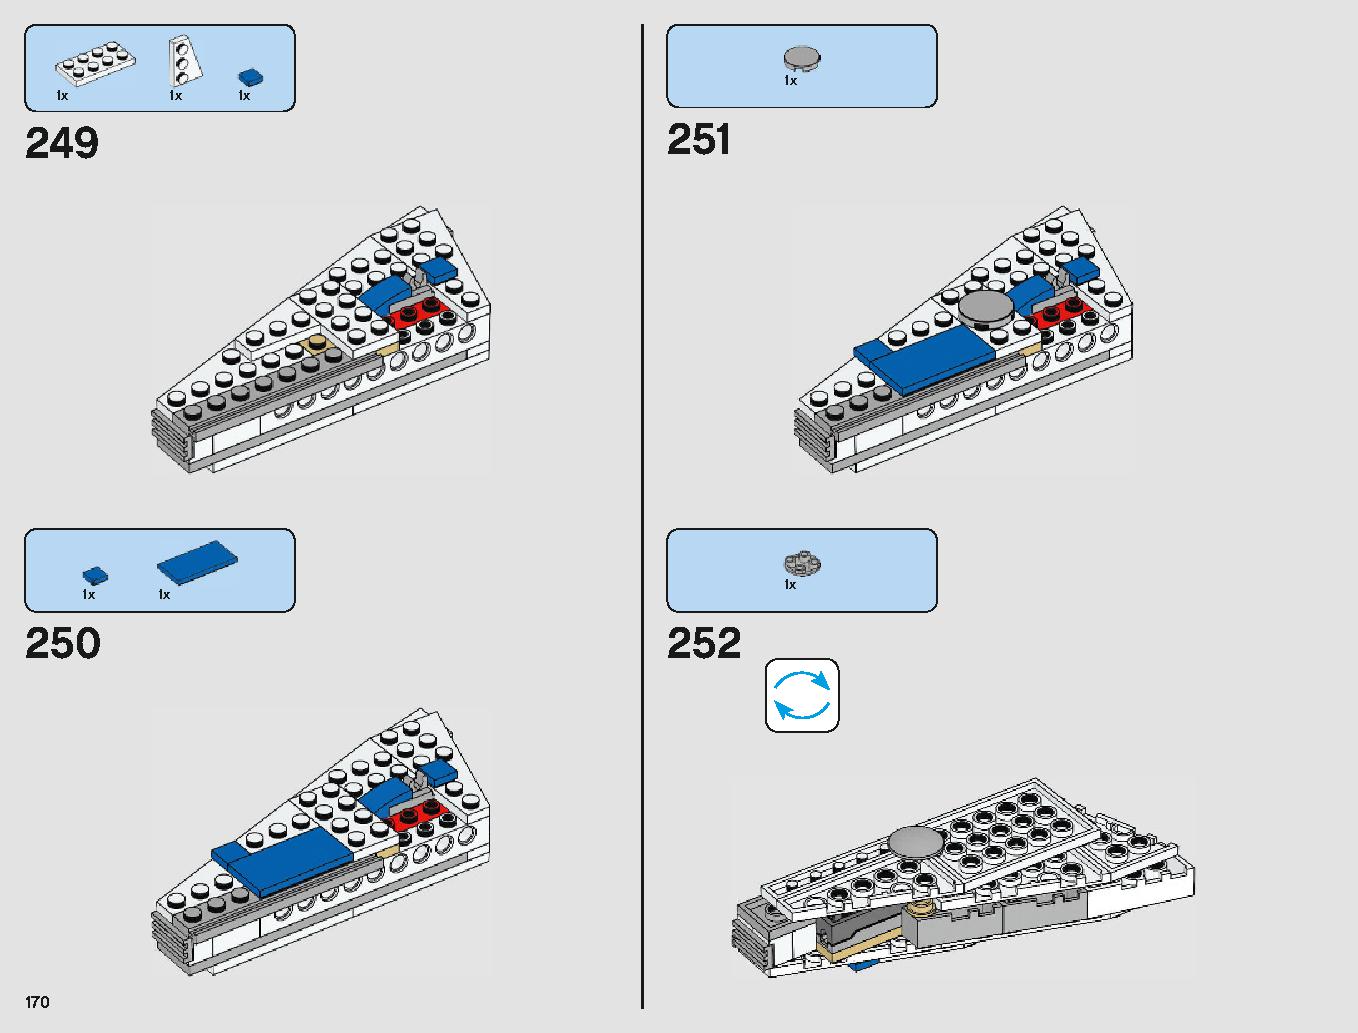 ミレニアム・ファルコン 75212 レゴの商品情報 レゴの説明書・組立方法 170 page